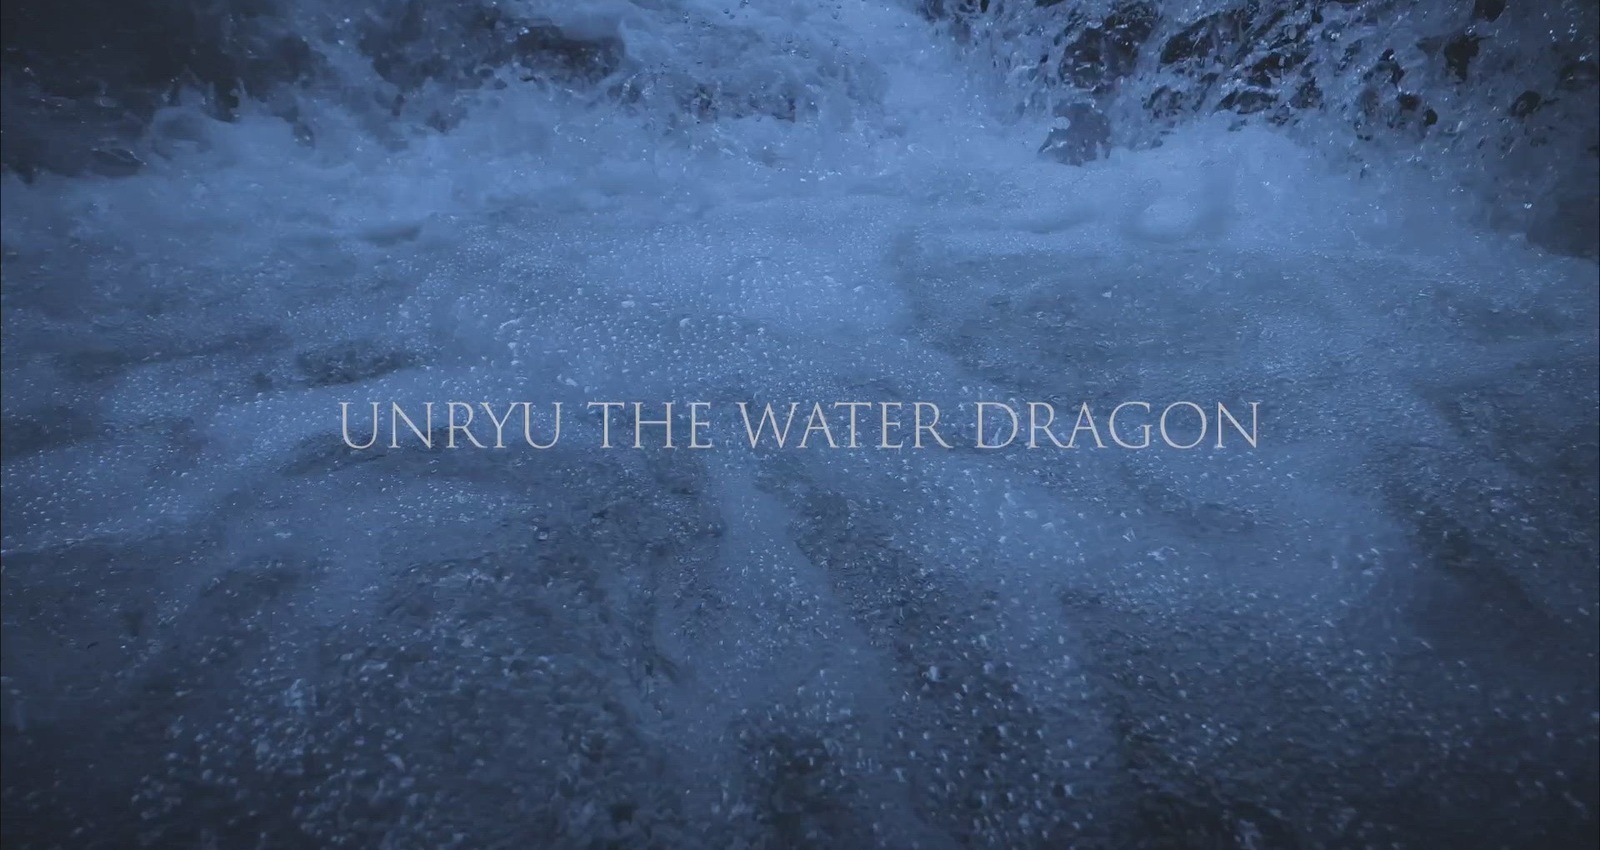 UNRYU THE WATER DRAGON